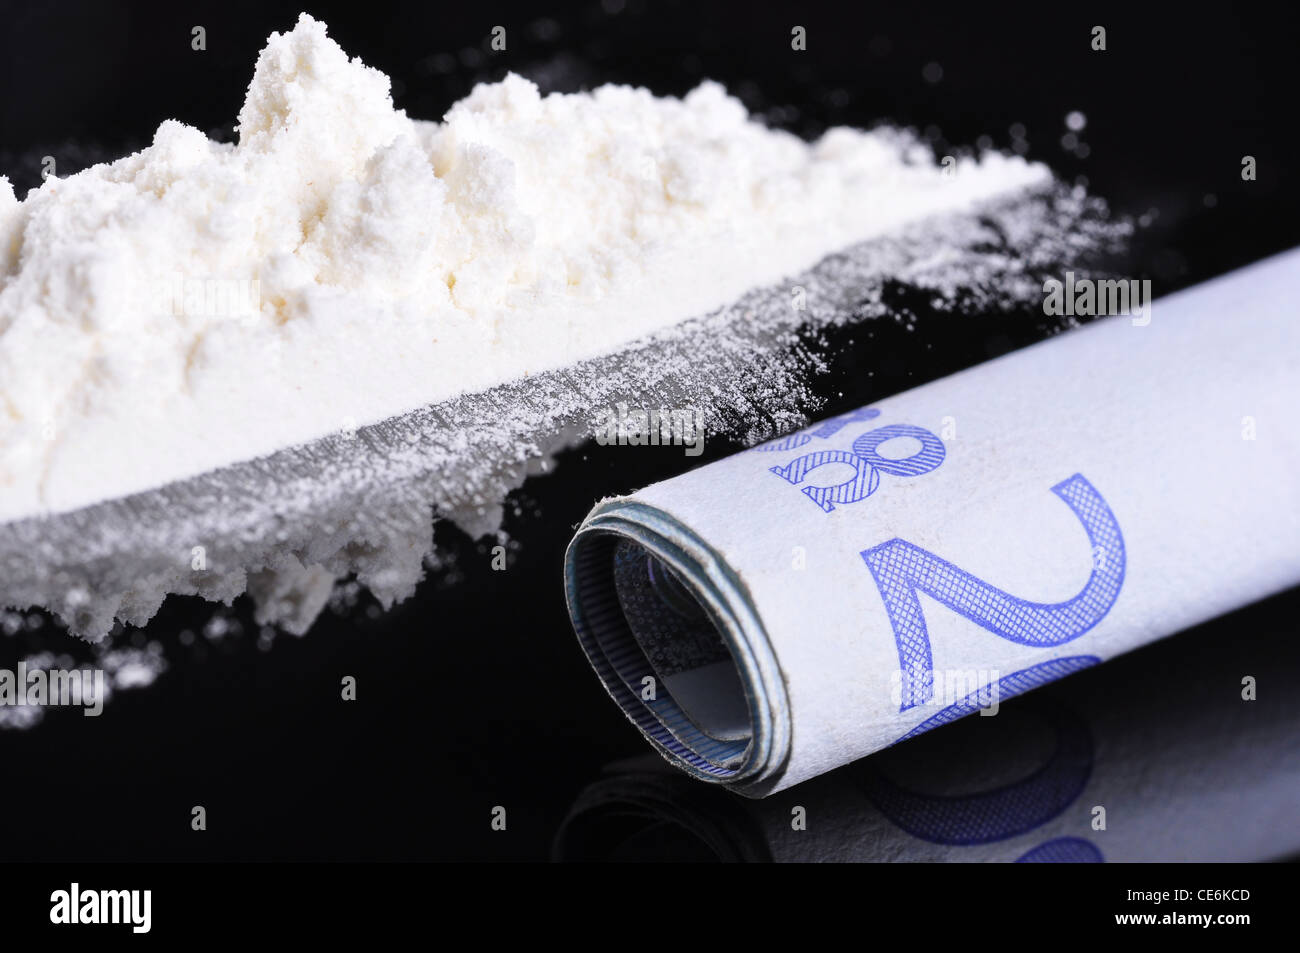 Un billet de banque à côté d'une ligne de cocaïne, prêt à être sniffée Banque D'Images